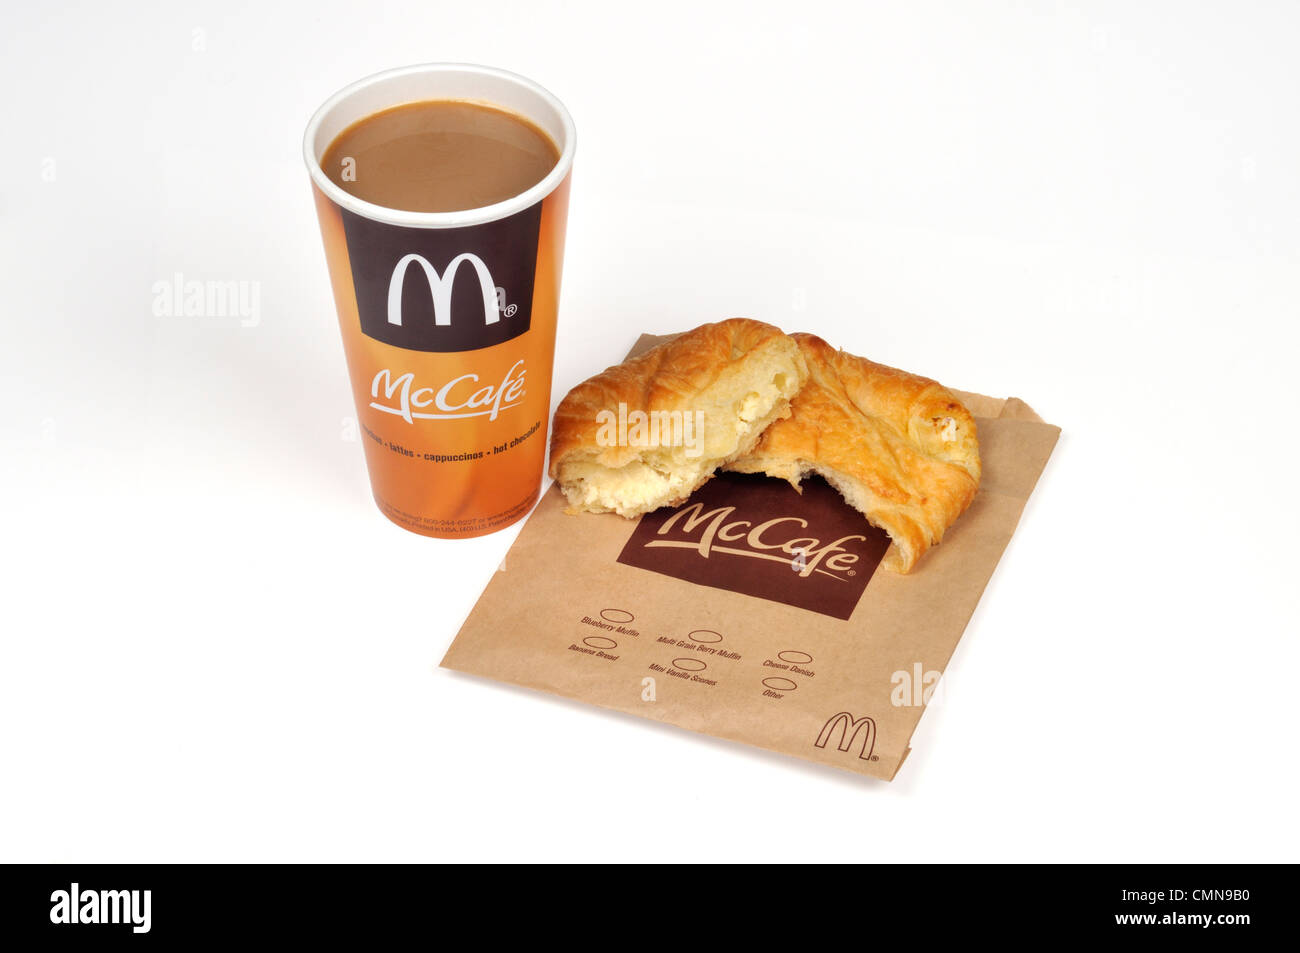 McDonald's tazza di caffè McCafe e formaggio pasta danish su sfondo bianco tagliato fuori degli Stati Uniti. Foto Stock